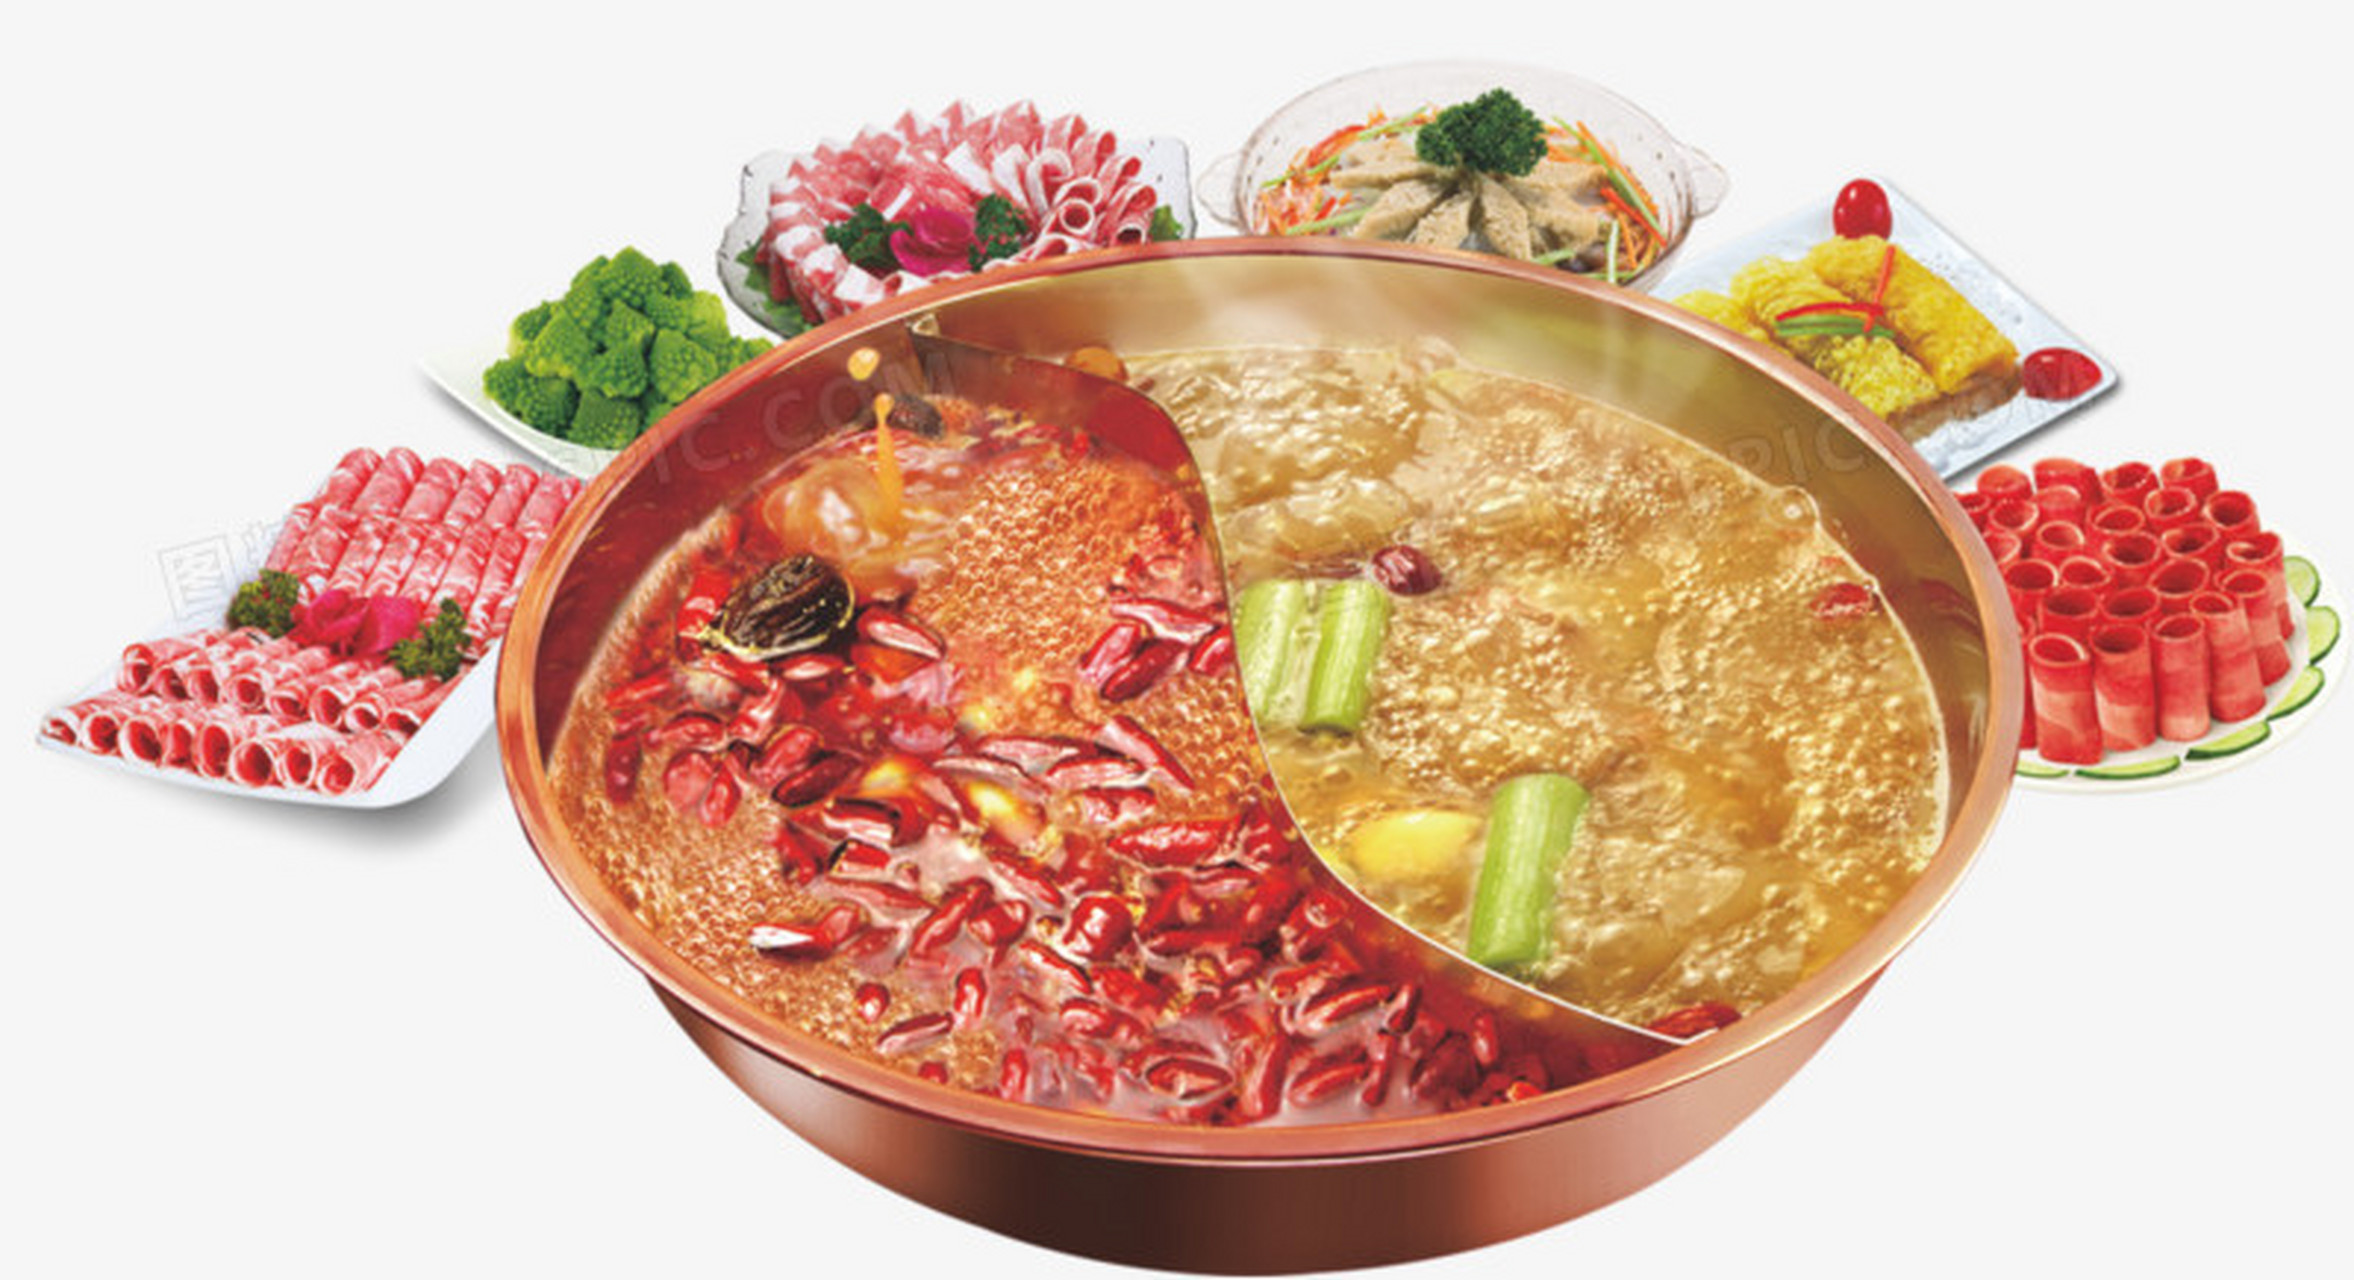 鸳鸯火锅是一种非常受欢迎的火锅,它由两部分组成:一个是辣的红汤底